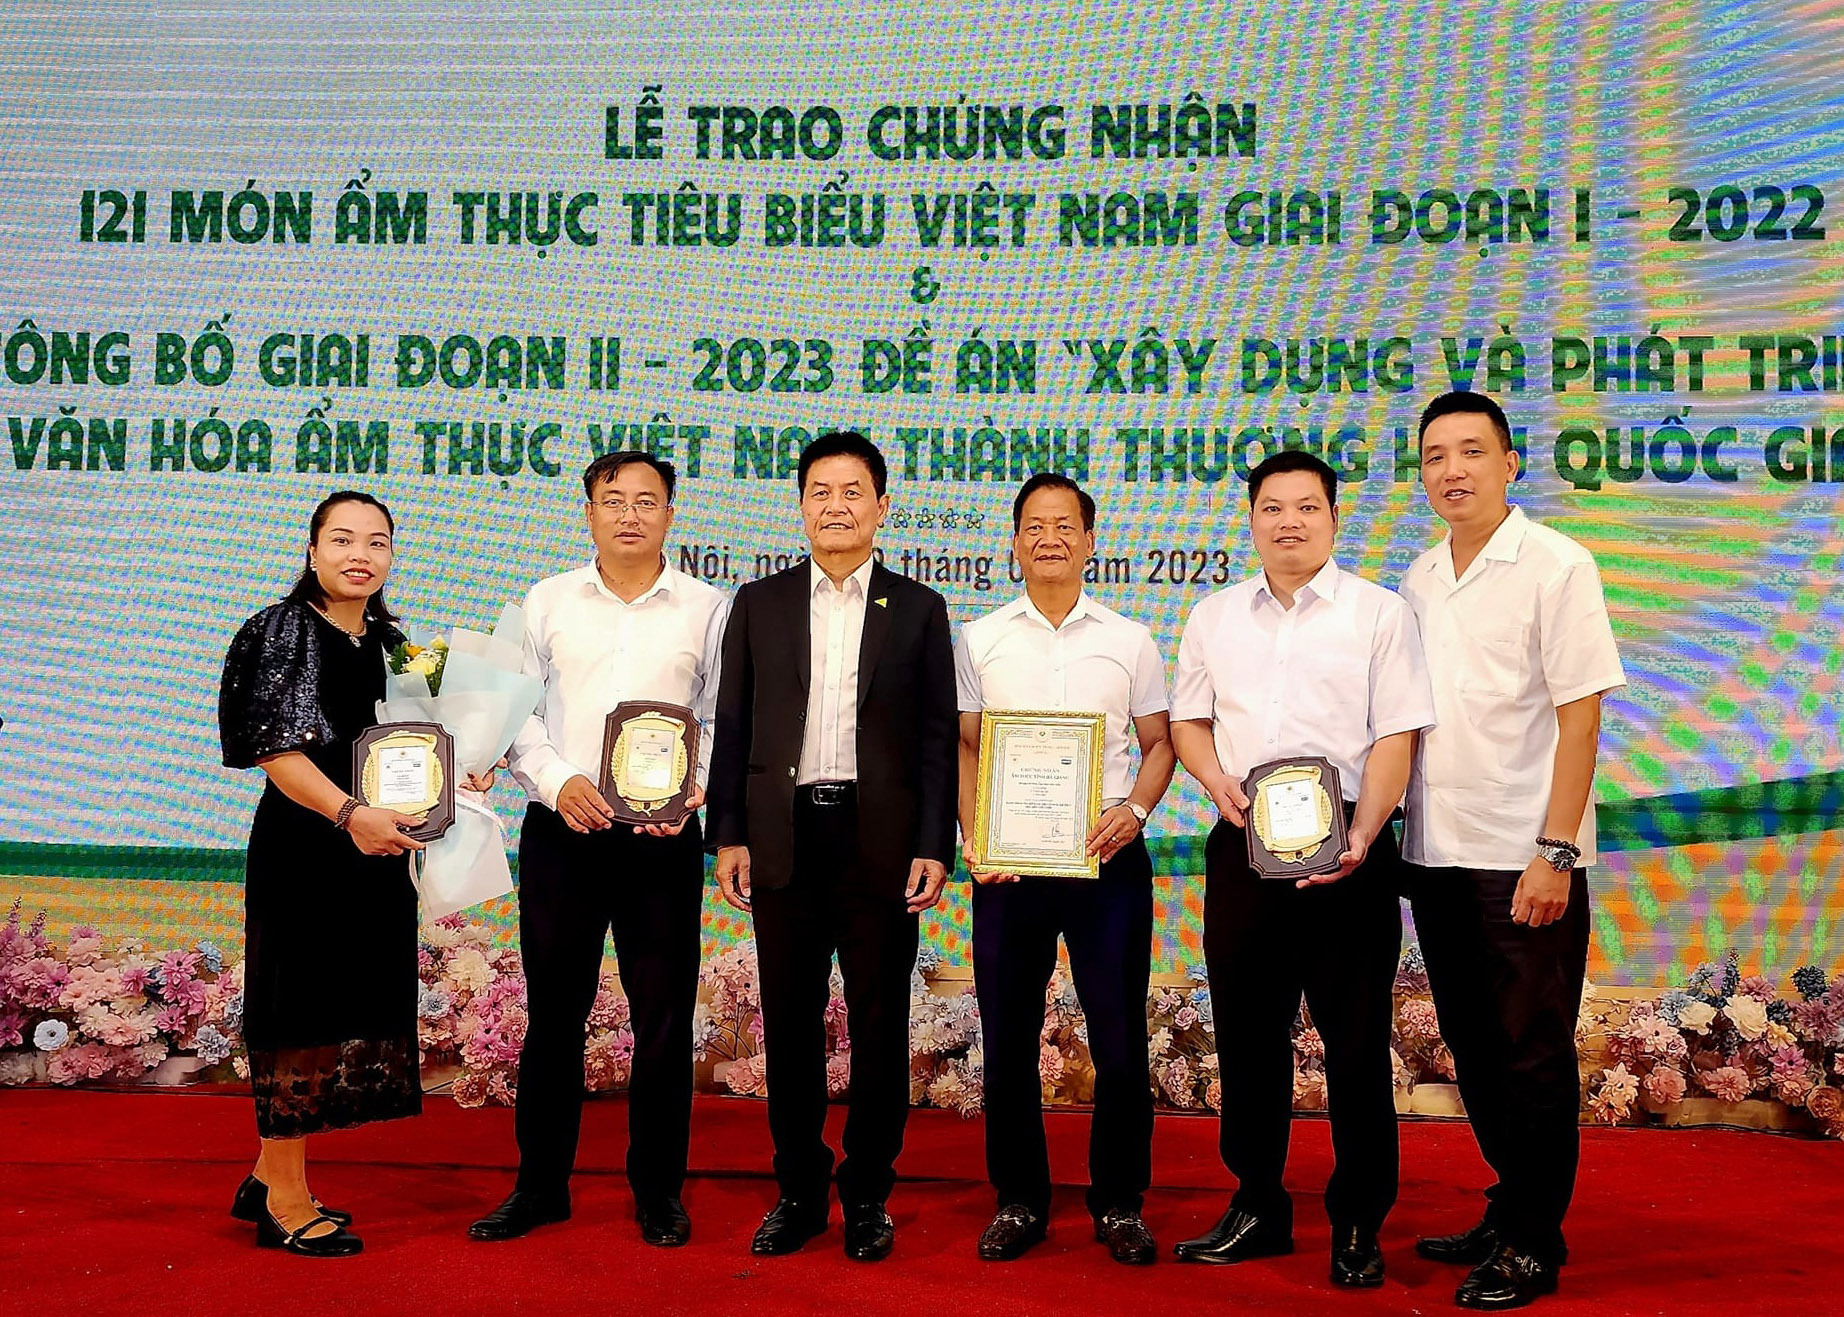 Lãnh đạo Sở Văn hóa TT&DL tỉnh và đại diện cho 3 món ẩm thực nhận giấy chứng nhận ẩm thực tiêu biểu Việt Nam. (Ảnh: Hiệp hội Du lịch tỉnh)